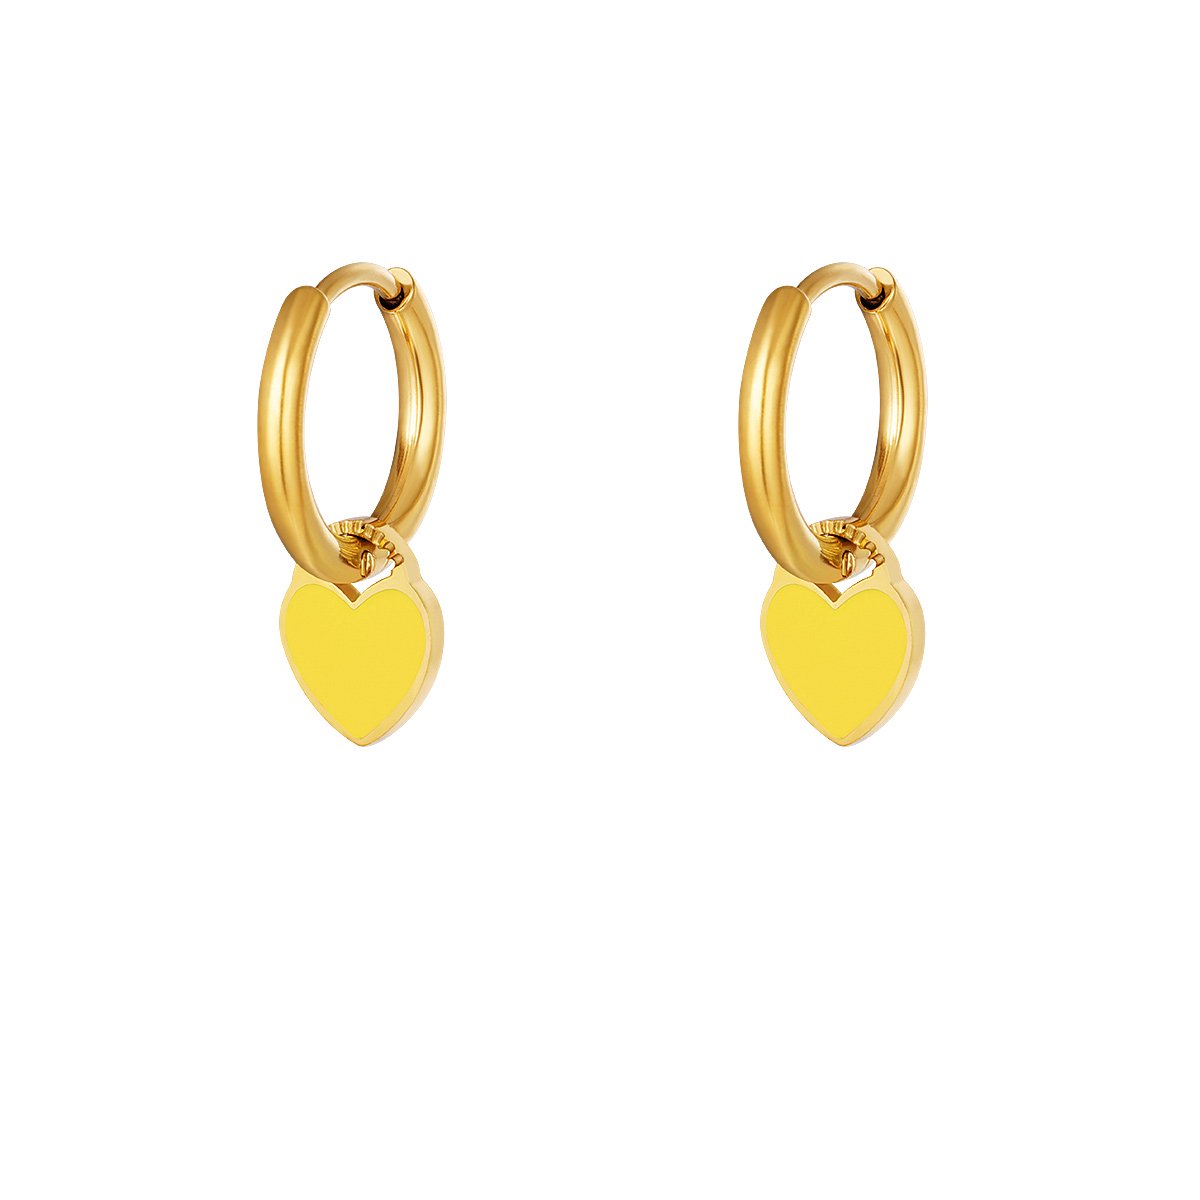 Stainless Steel Earrings Colorful Heart - Yehwang - Oorbellen - One size - Goud/Geel